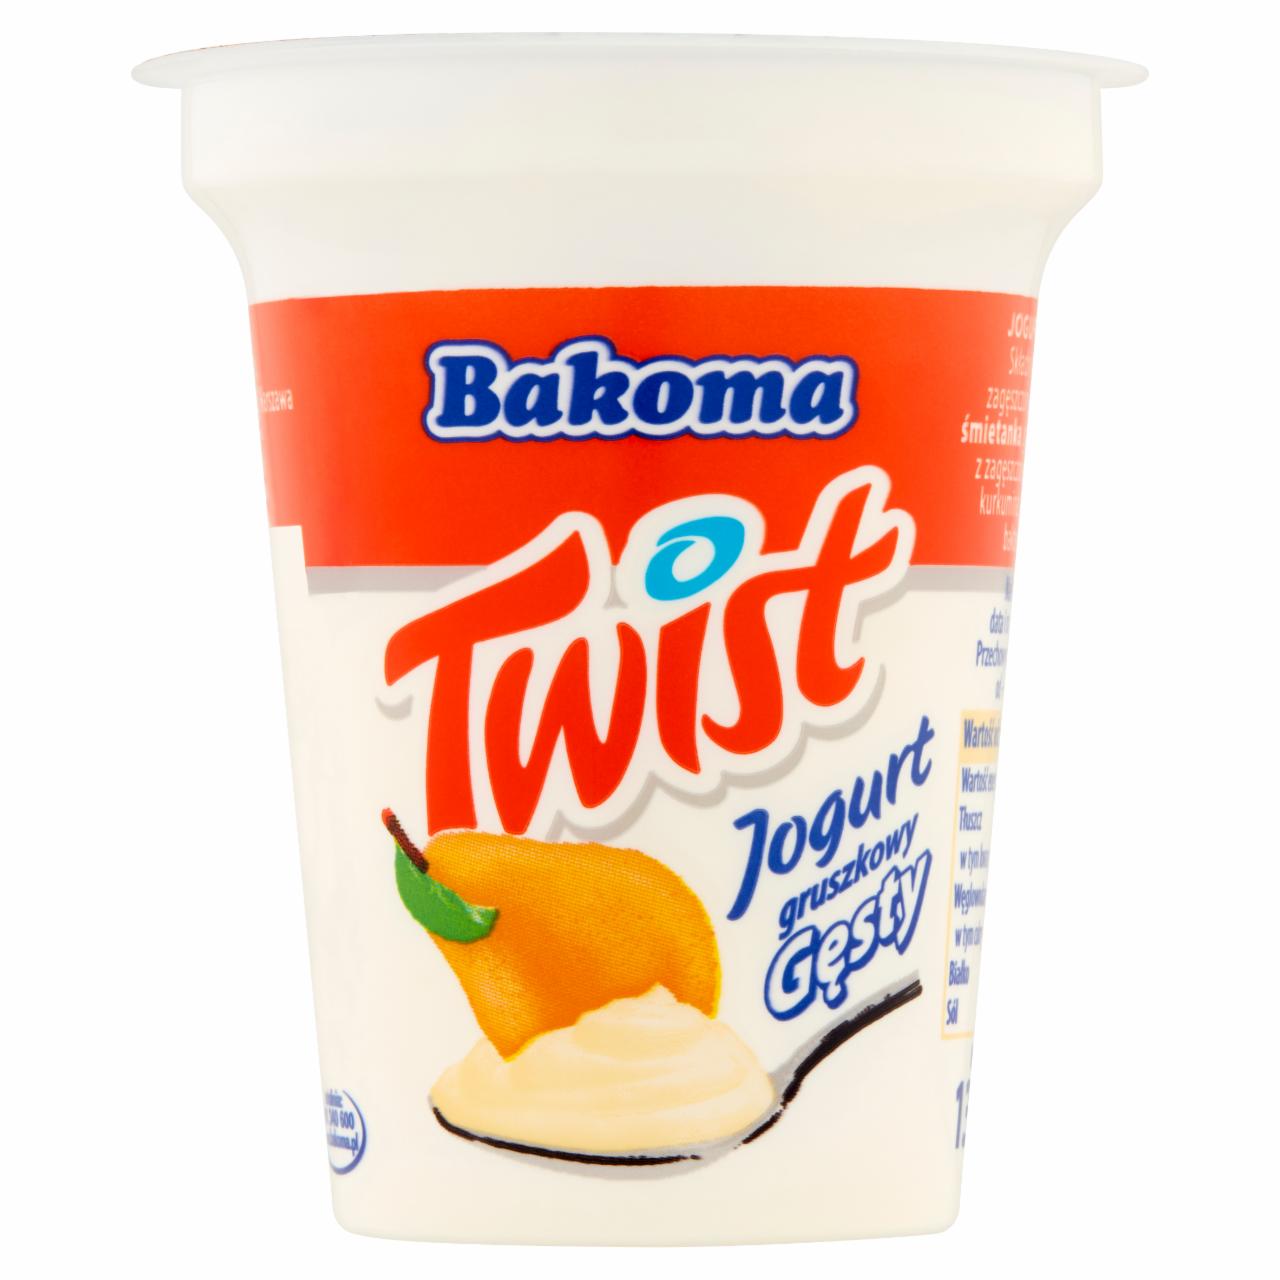 Zdjęcia - Bakoma Twist Jogurt gruszkowy gęsty 135 g